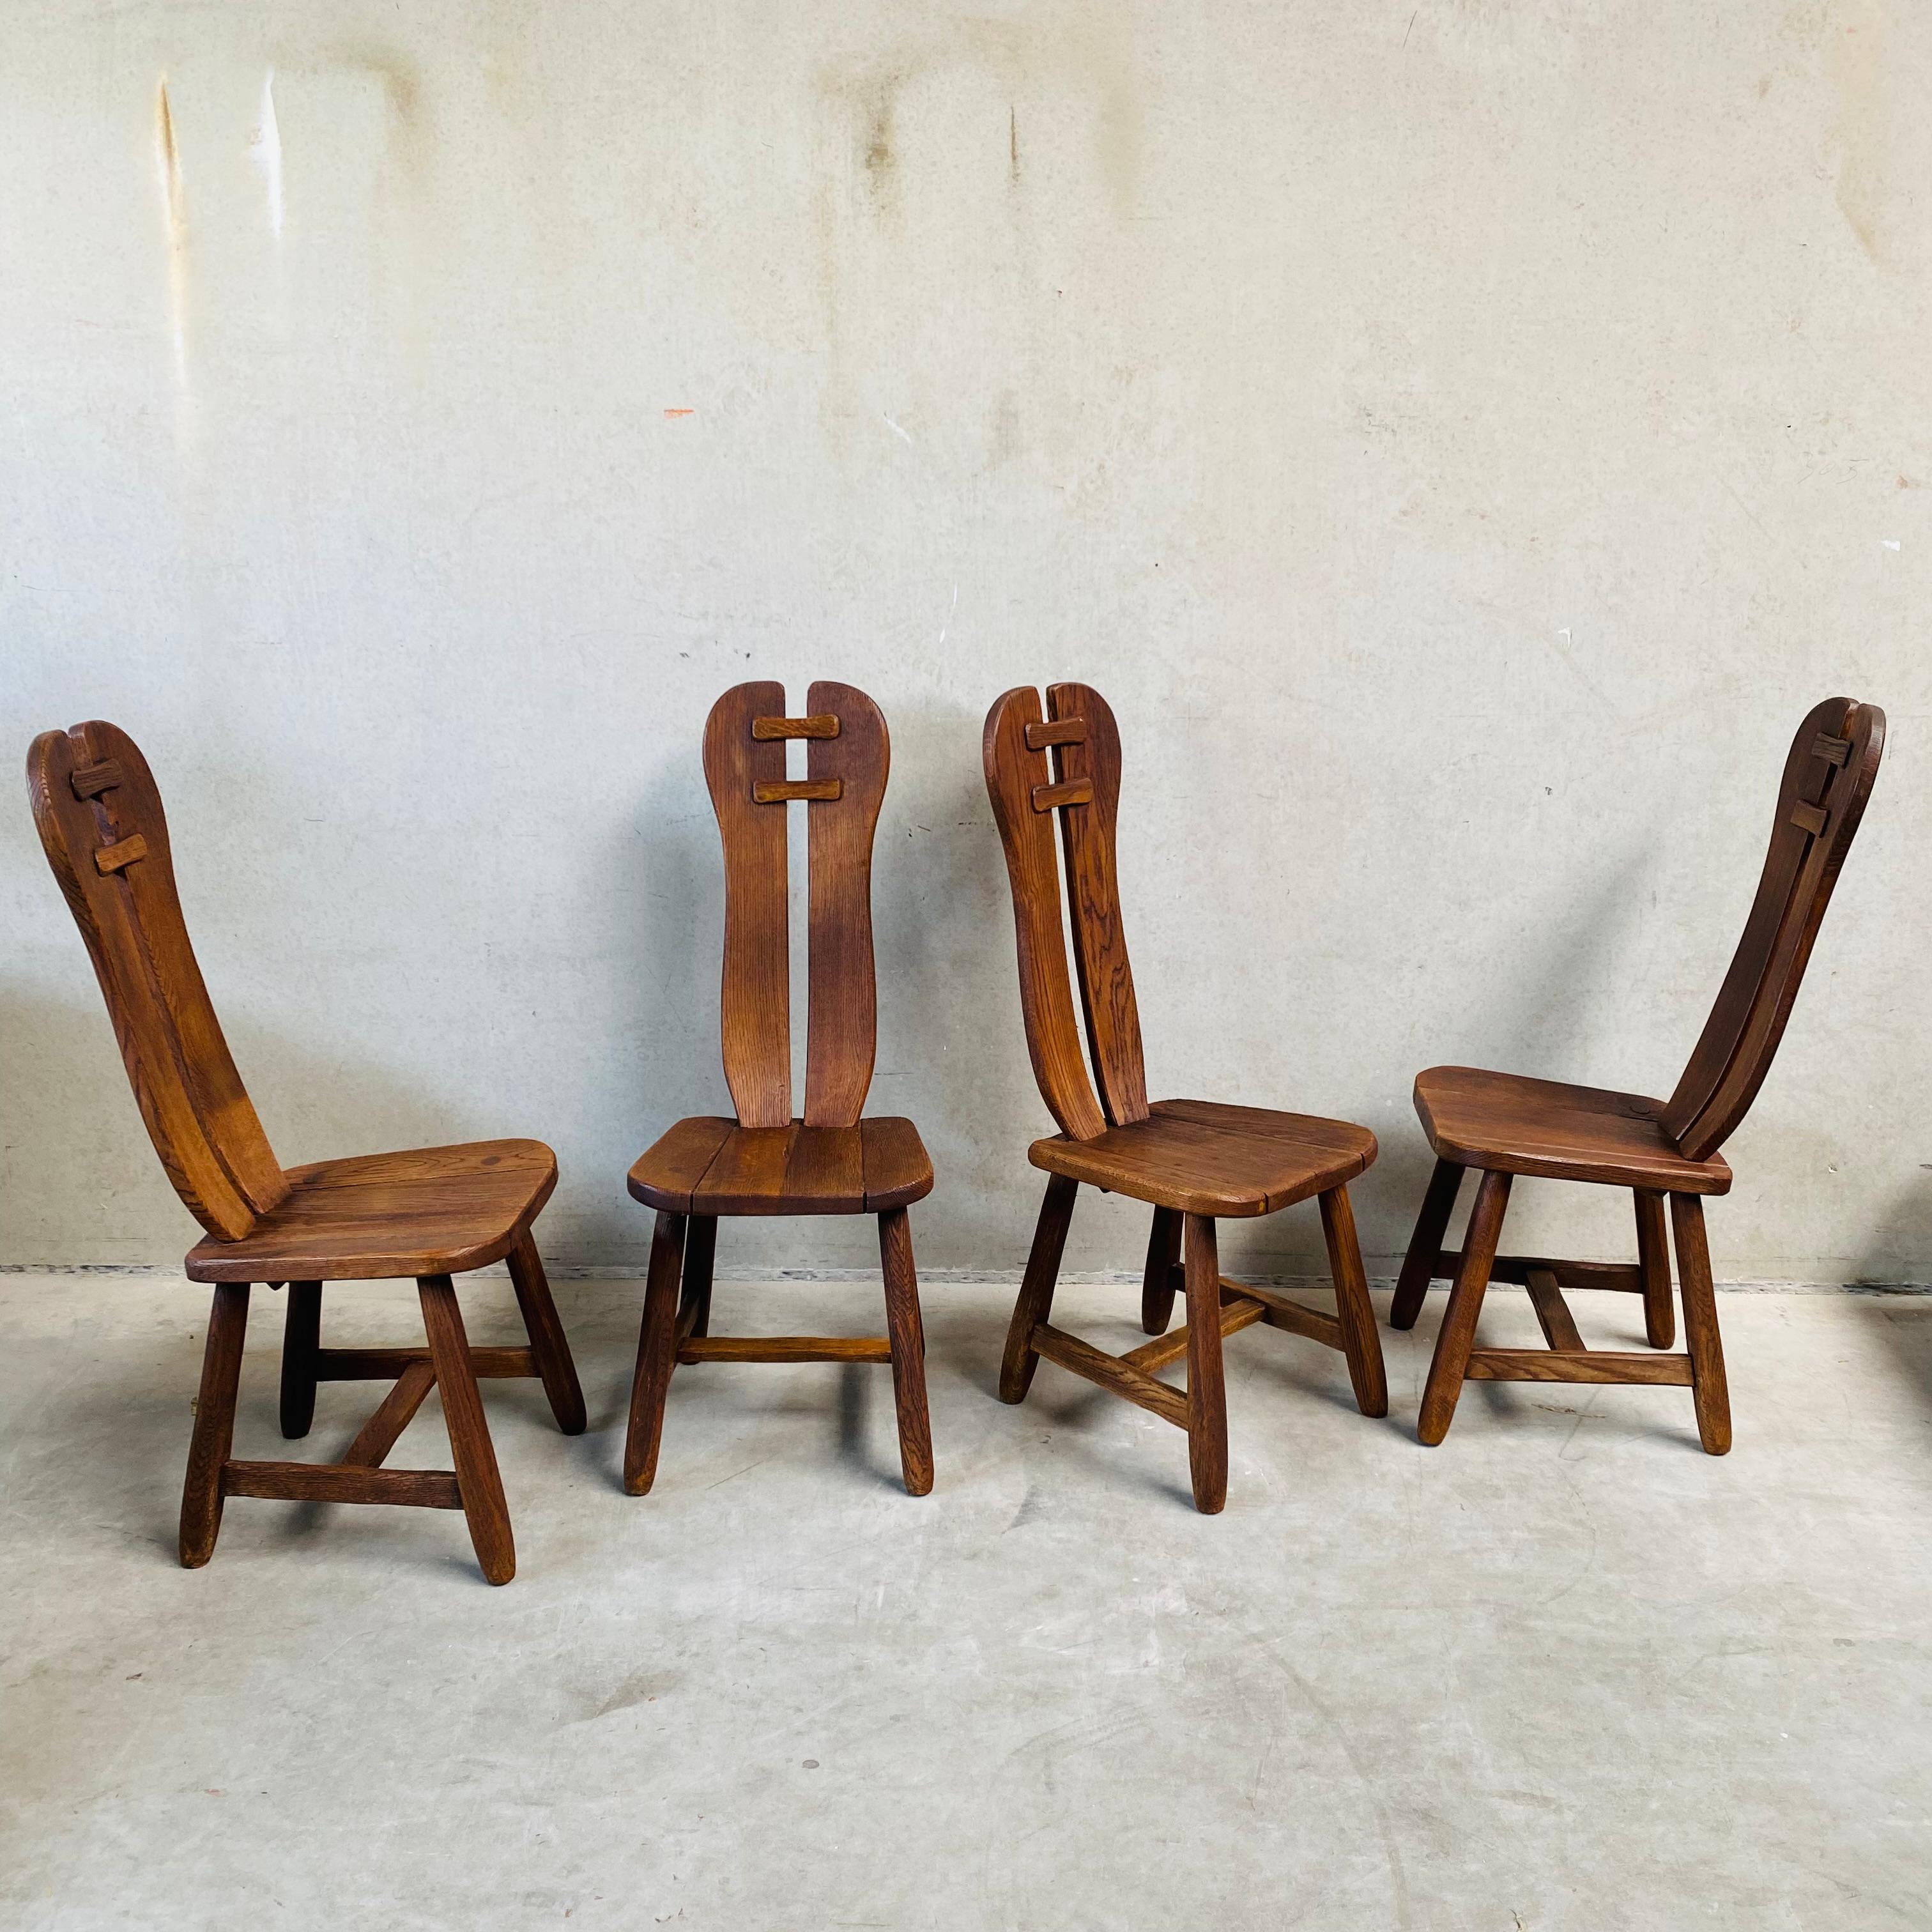 Vous recherchez des chaises de salle à manger uniques et élégantes pour donner du caractère à votre maison ? Ne cherchez pas plus loin que les chaises à manger d'art en chêne massif brutaliste de Kunstmeubelen De Puydt, fabriquées en Belgique dans